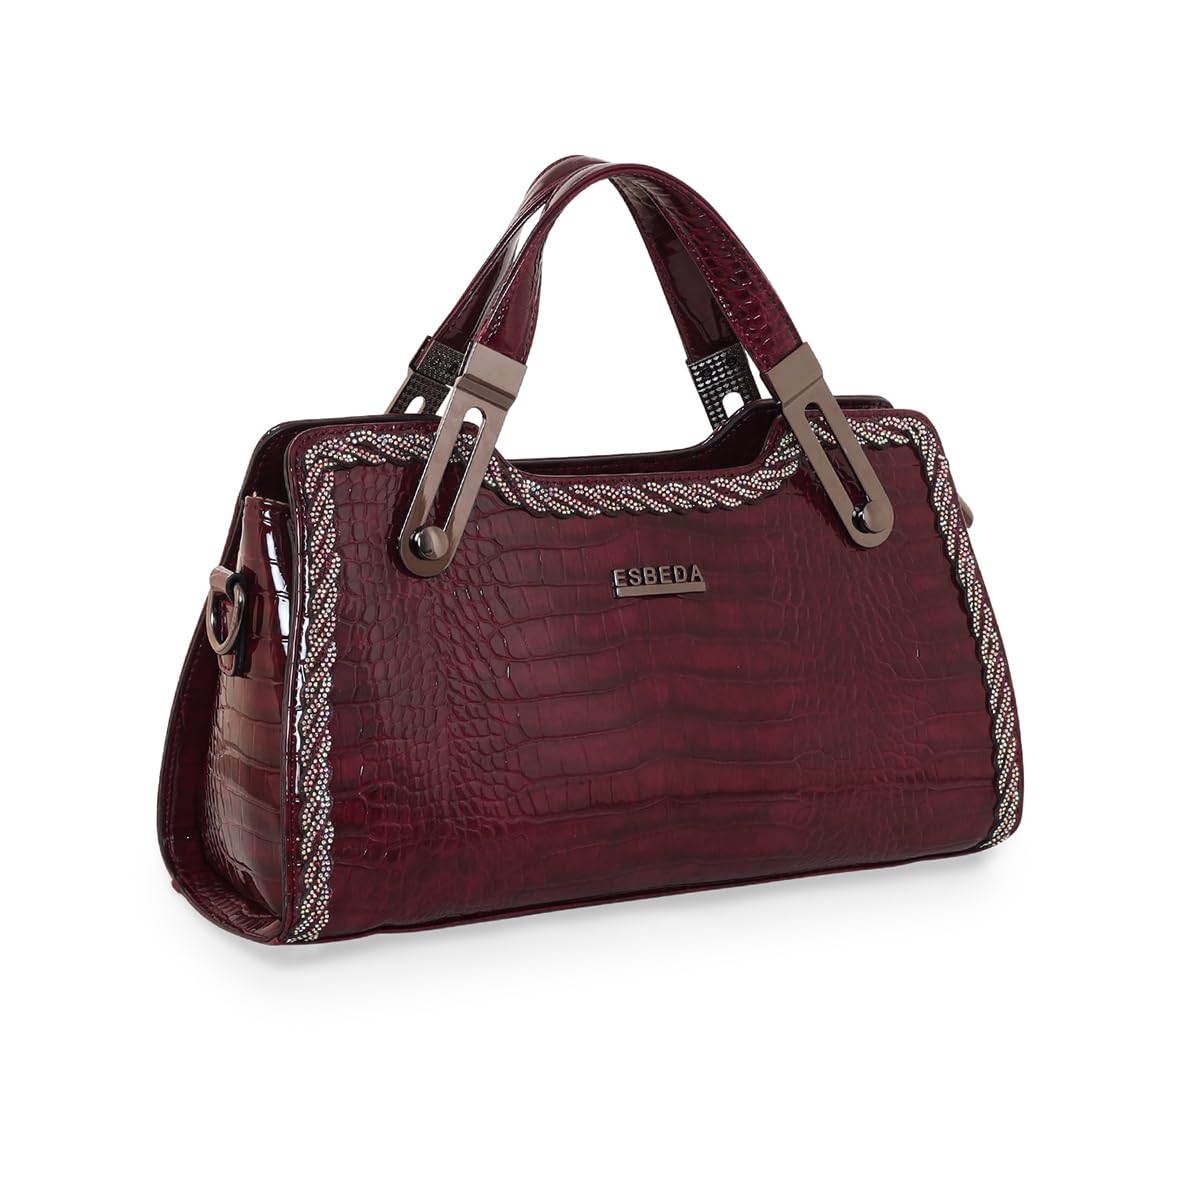 Buy ESBEDA Green Color Croco Pattern office Handbag For Women at Amazon.in